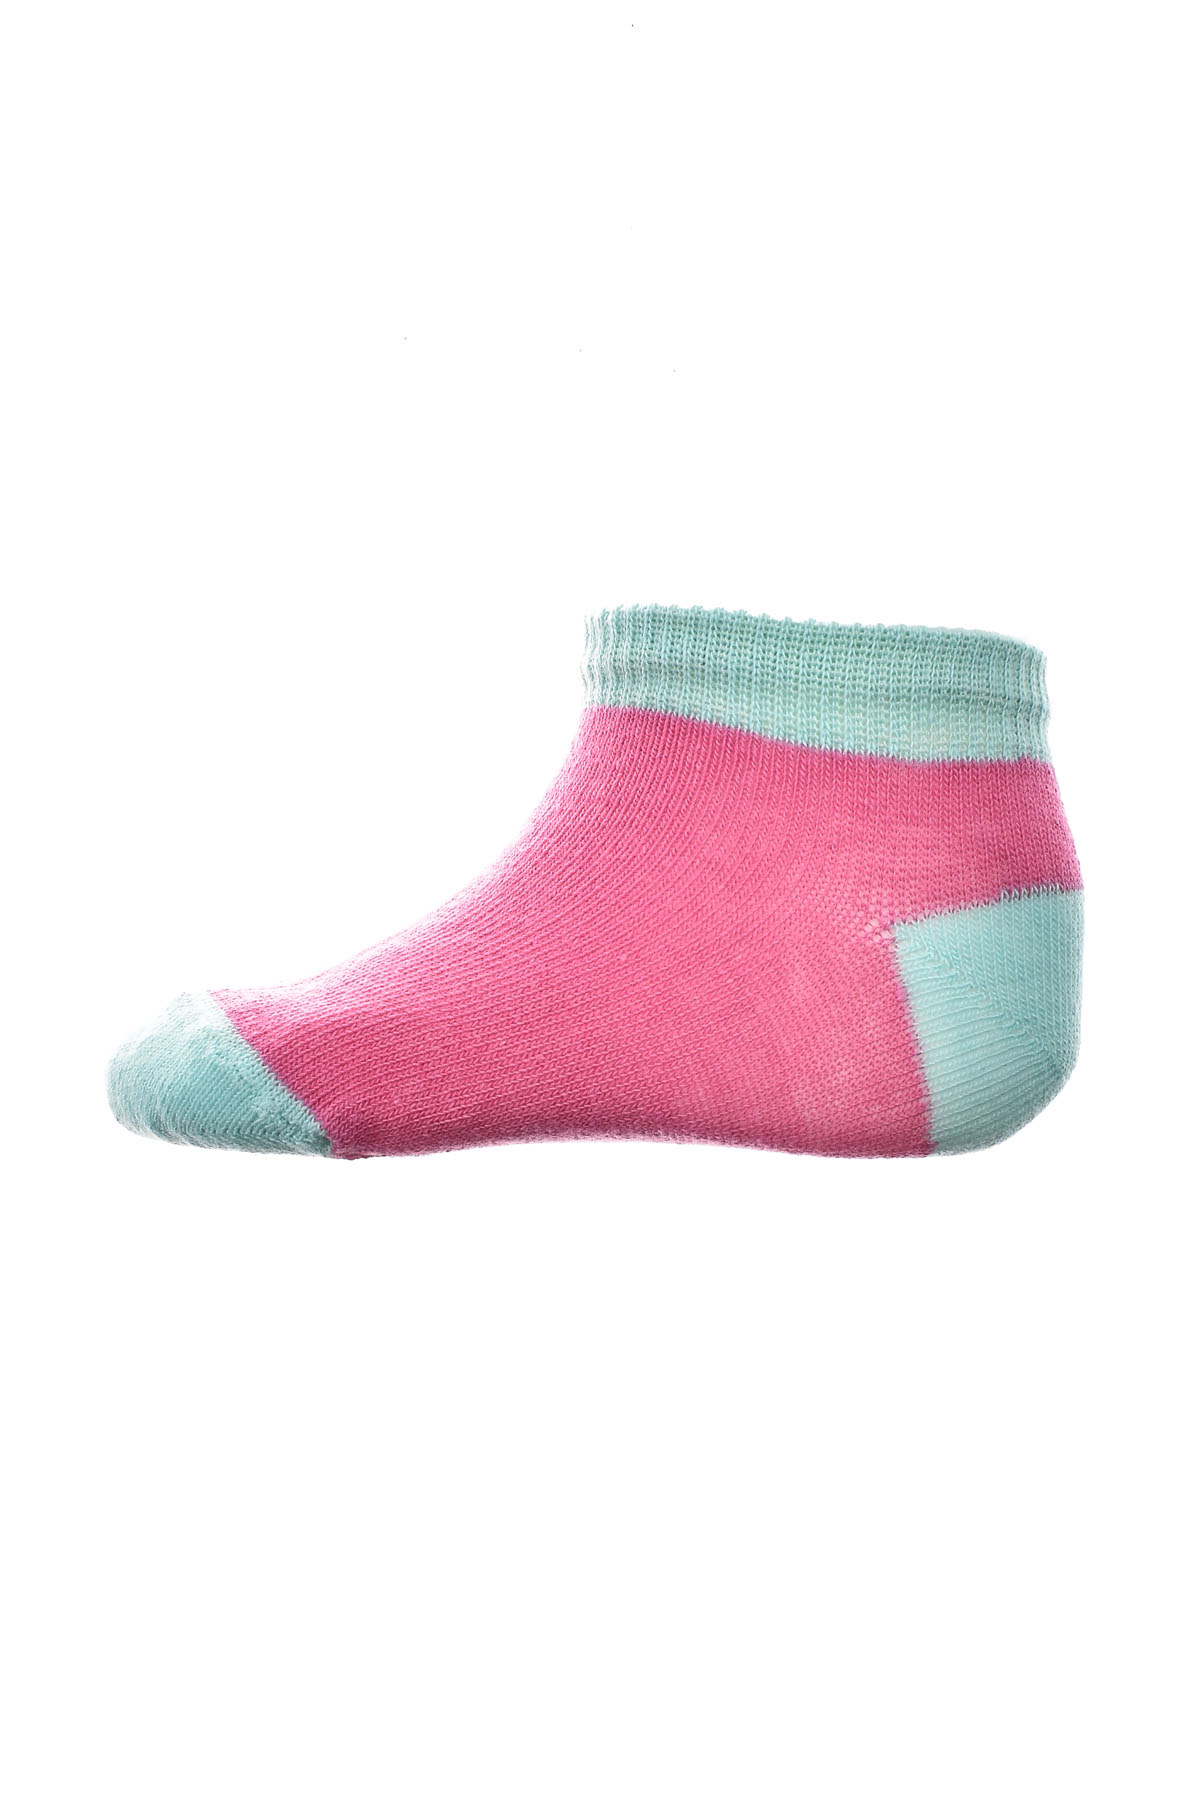 Παιδικές κάλτσες - BebeLino - 0